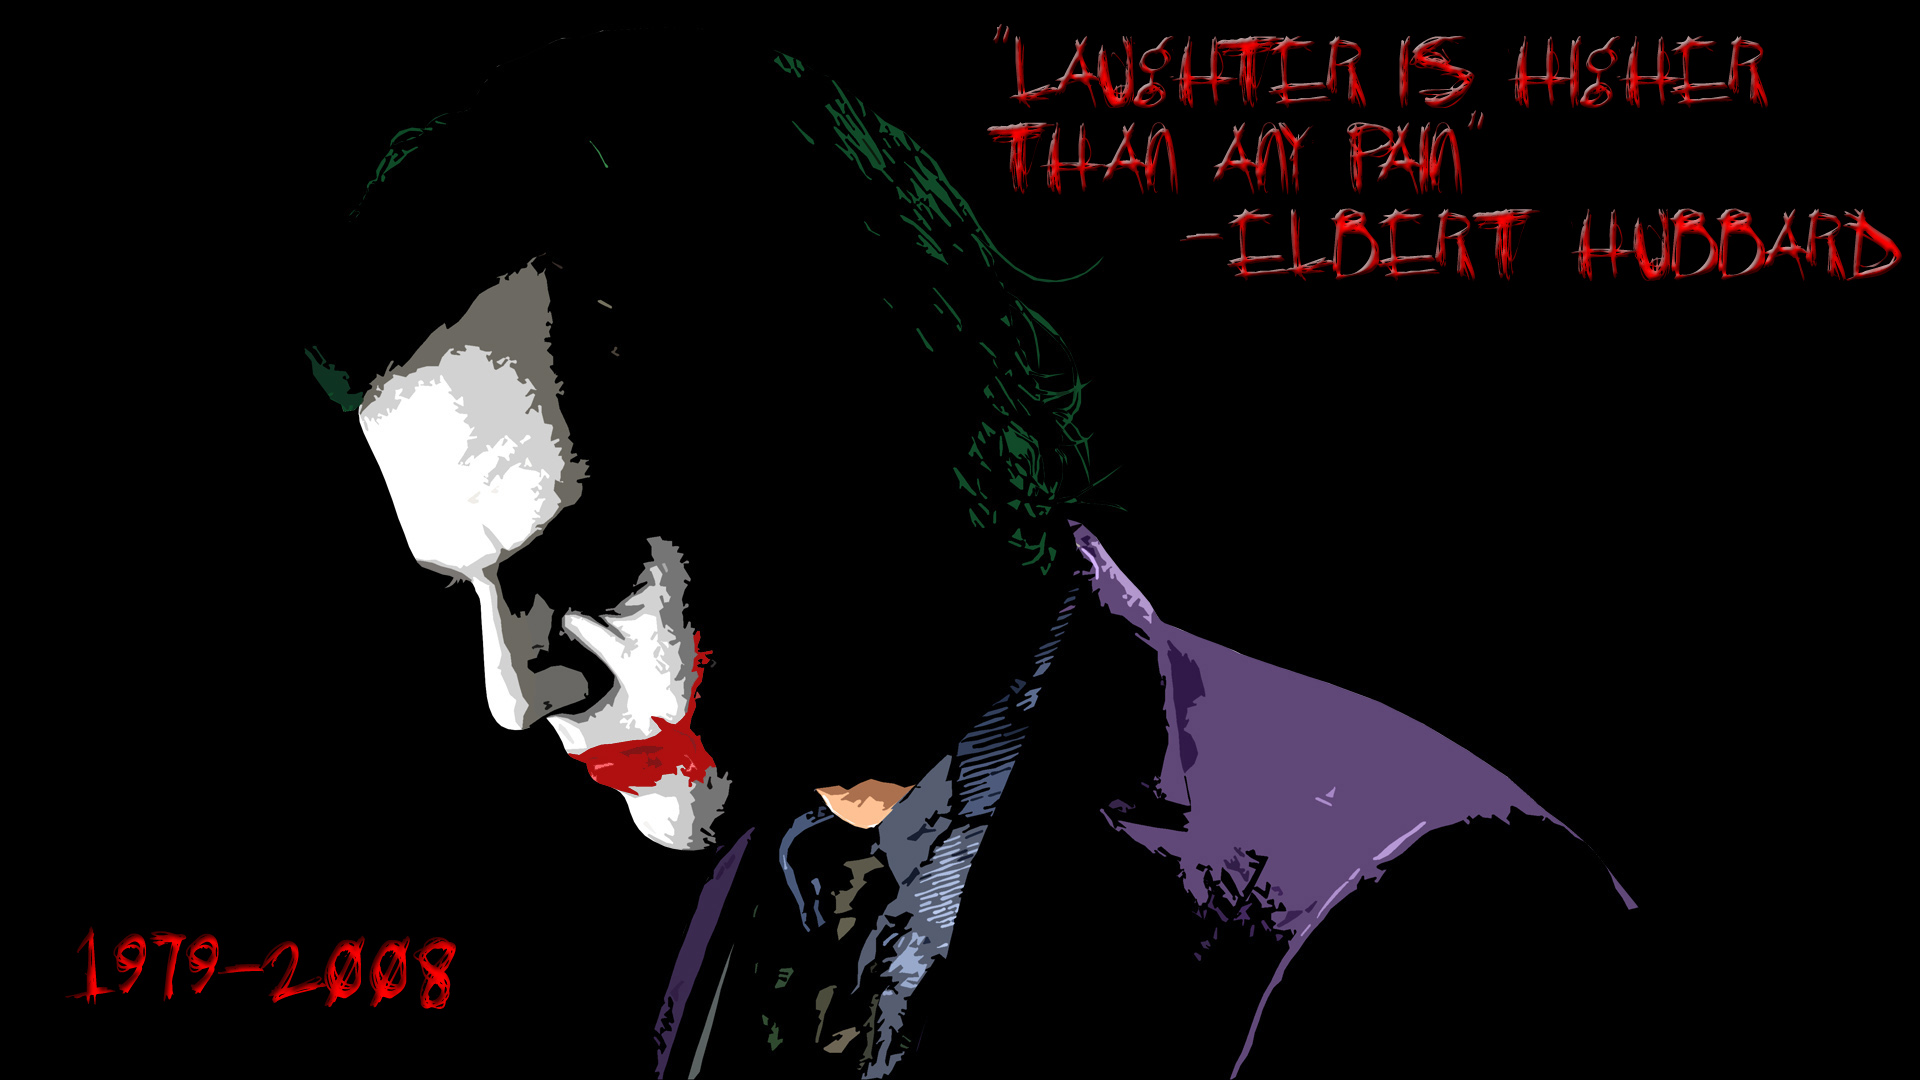 Joker Quotes Wallpaper